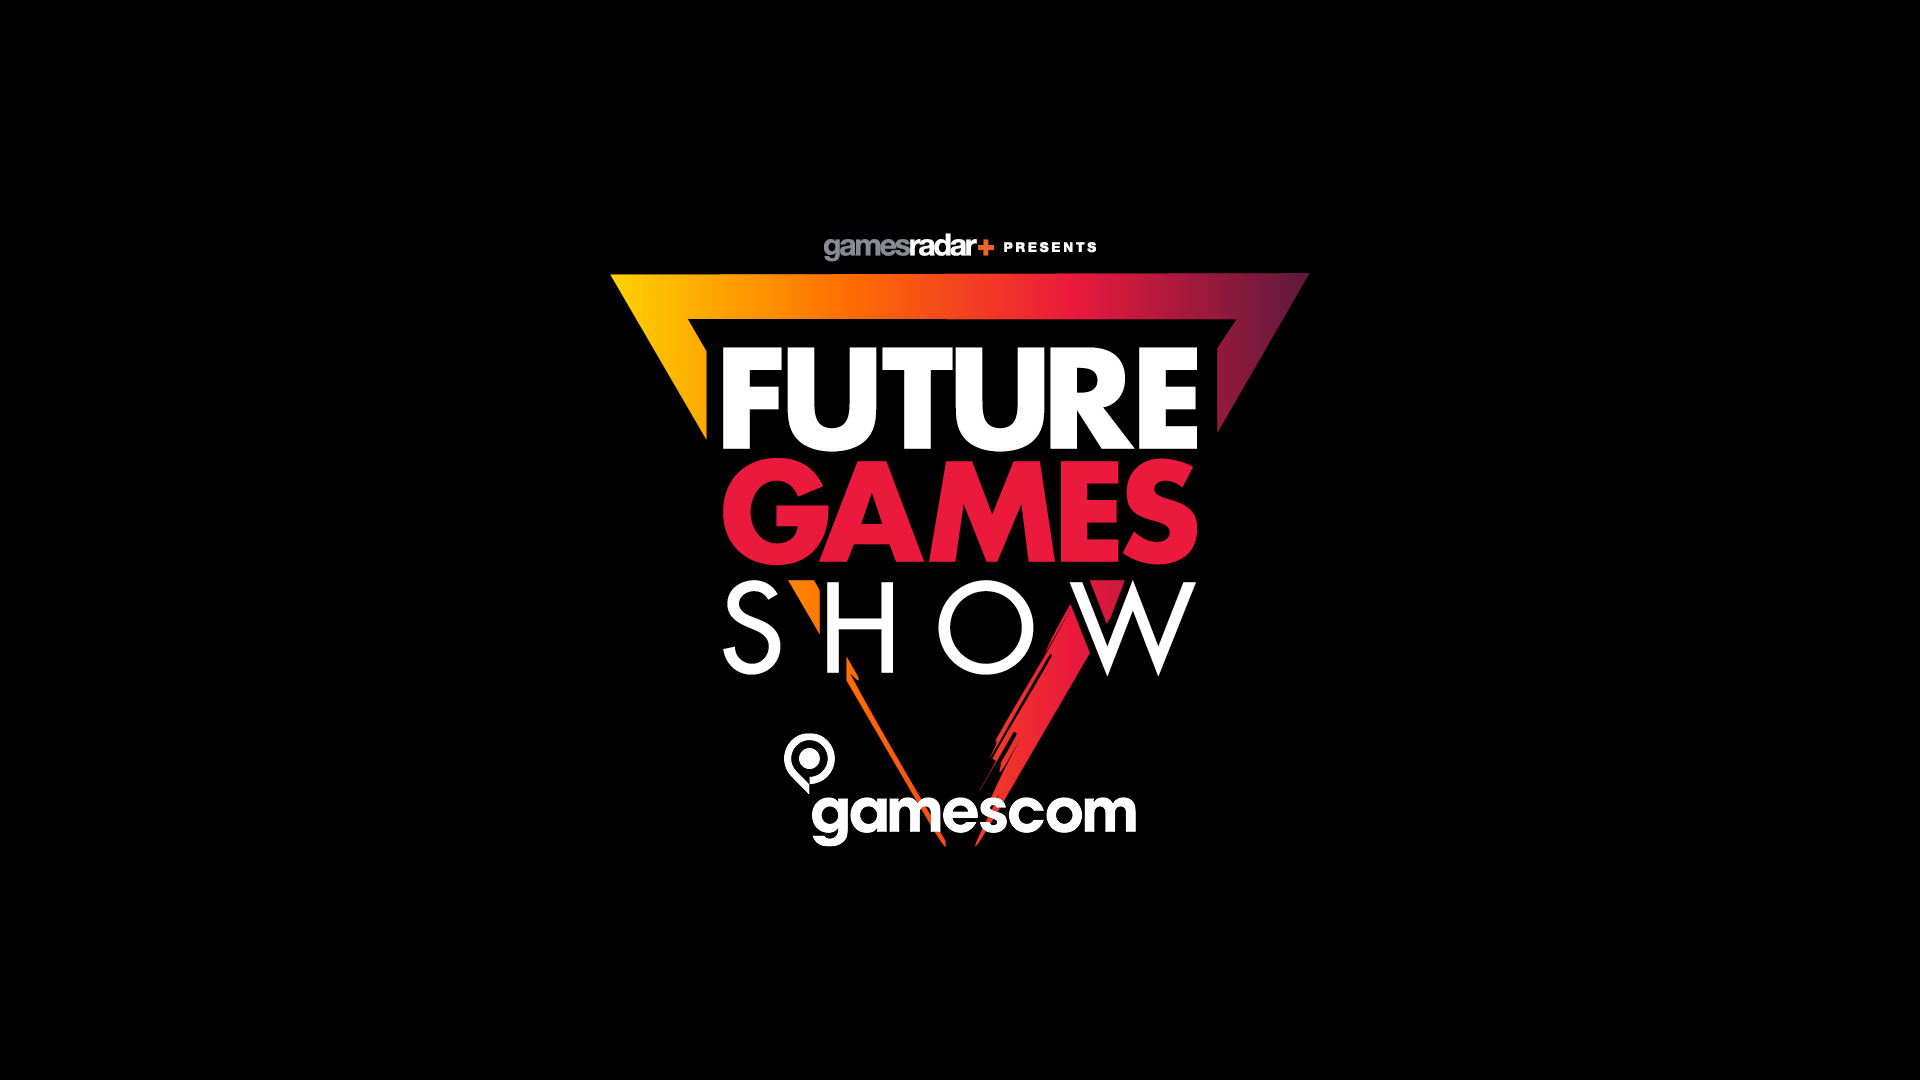 Future Games Show @ Gamescom arte-chave.